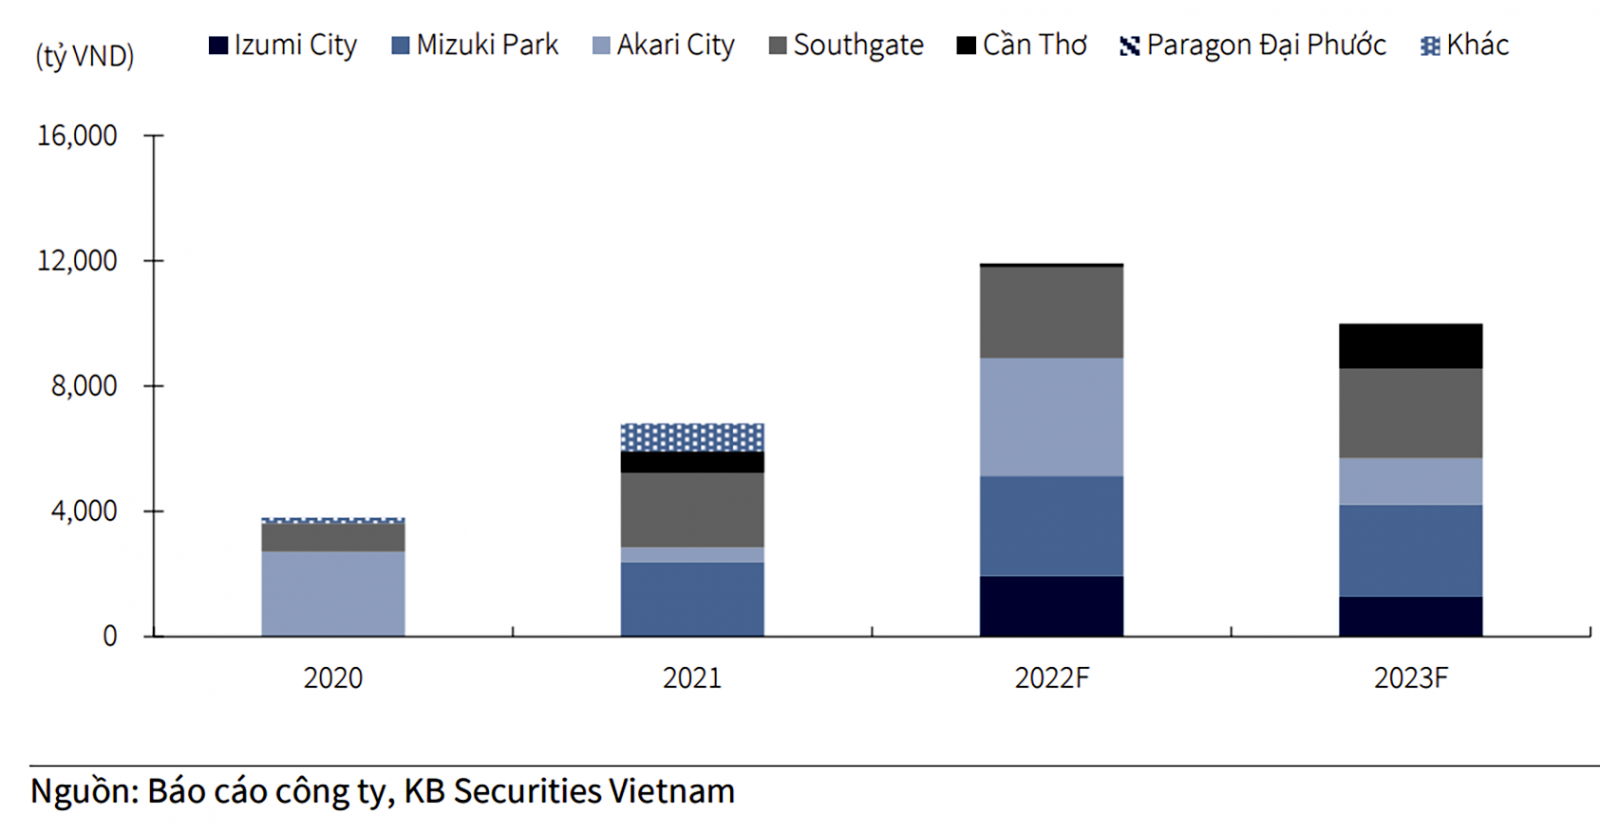  Doanh số bán hàng 2021-2023F của Nam Long.